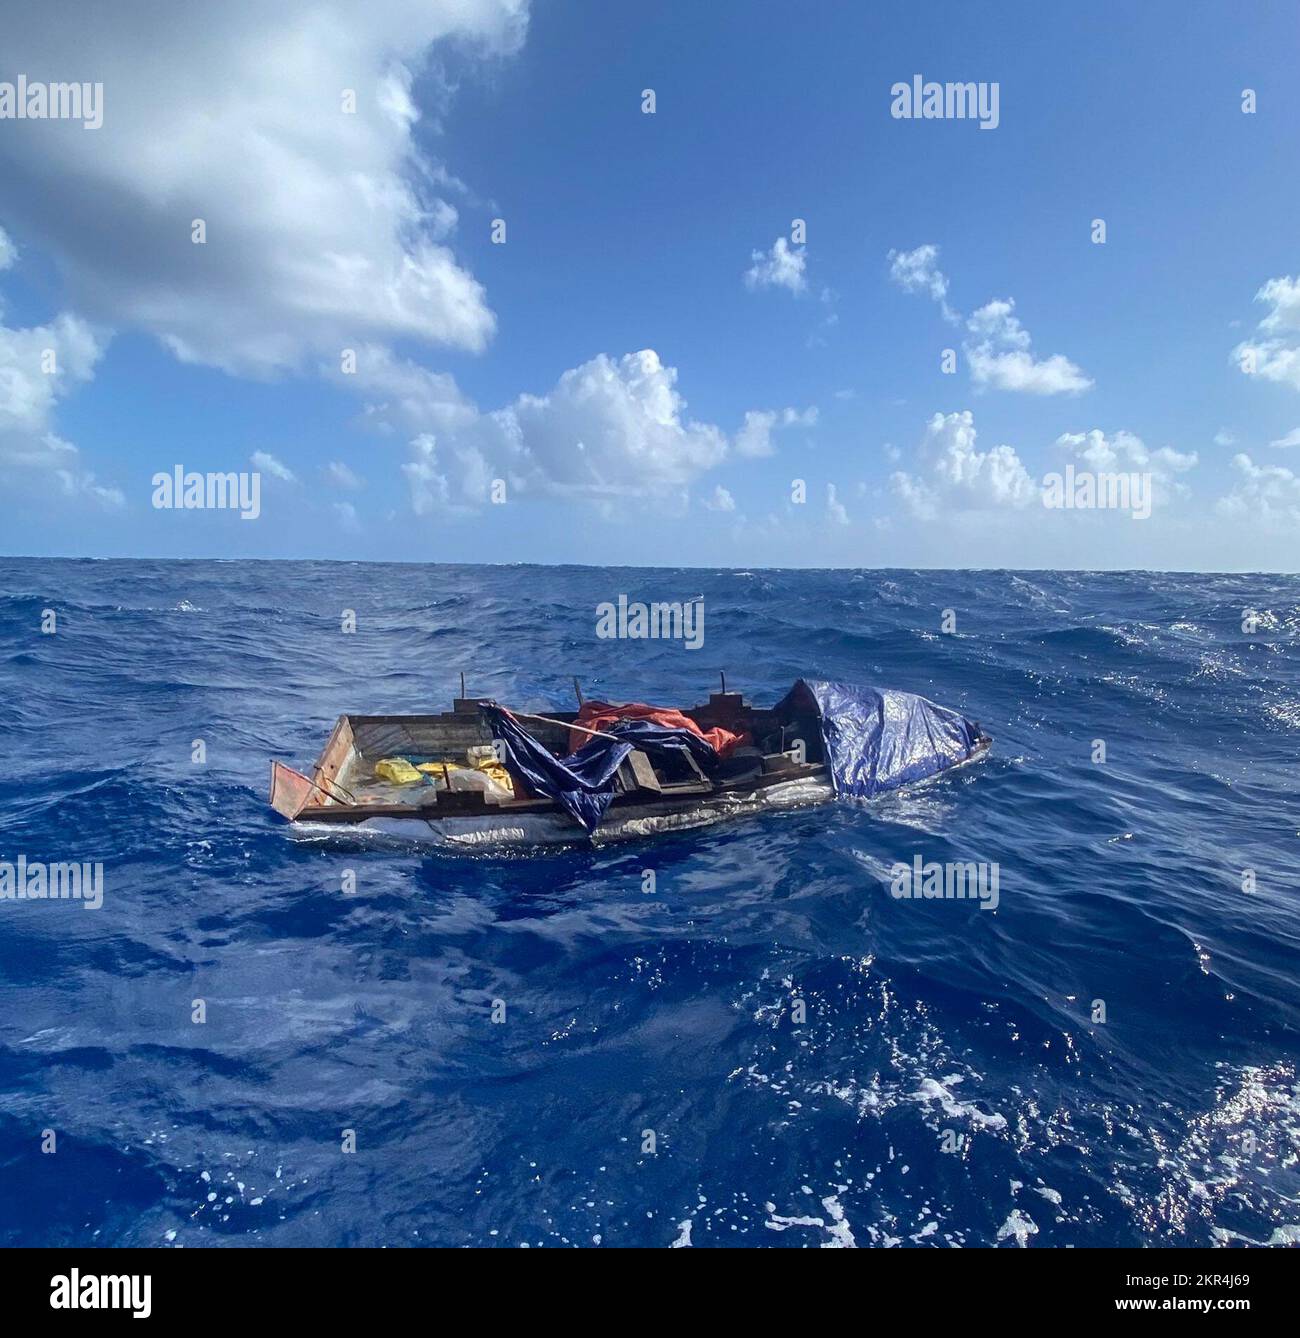 Ein guter, von Samaritern gemeldeter Sektor Key West Wächter dieses Migrantenschiffs, etwa 10 Meilen südlich von Lower Matecombe Key, Florida, 7. November 2022. Die Menschen wurden am 12. November 2022 in ihre Heimat zurückgeführt. (USA Küstenwache Foto) Stockfoto